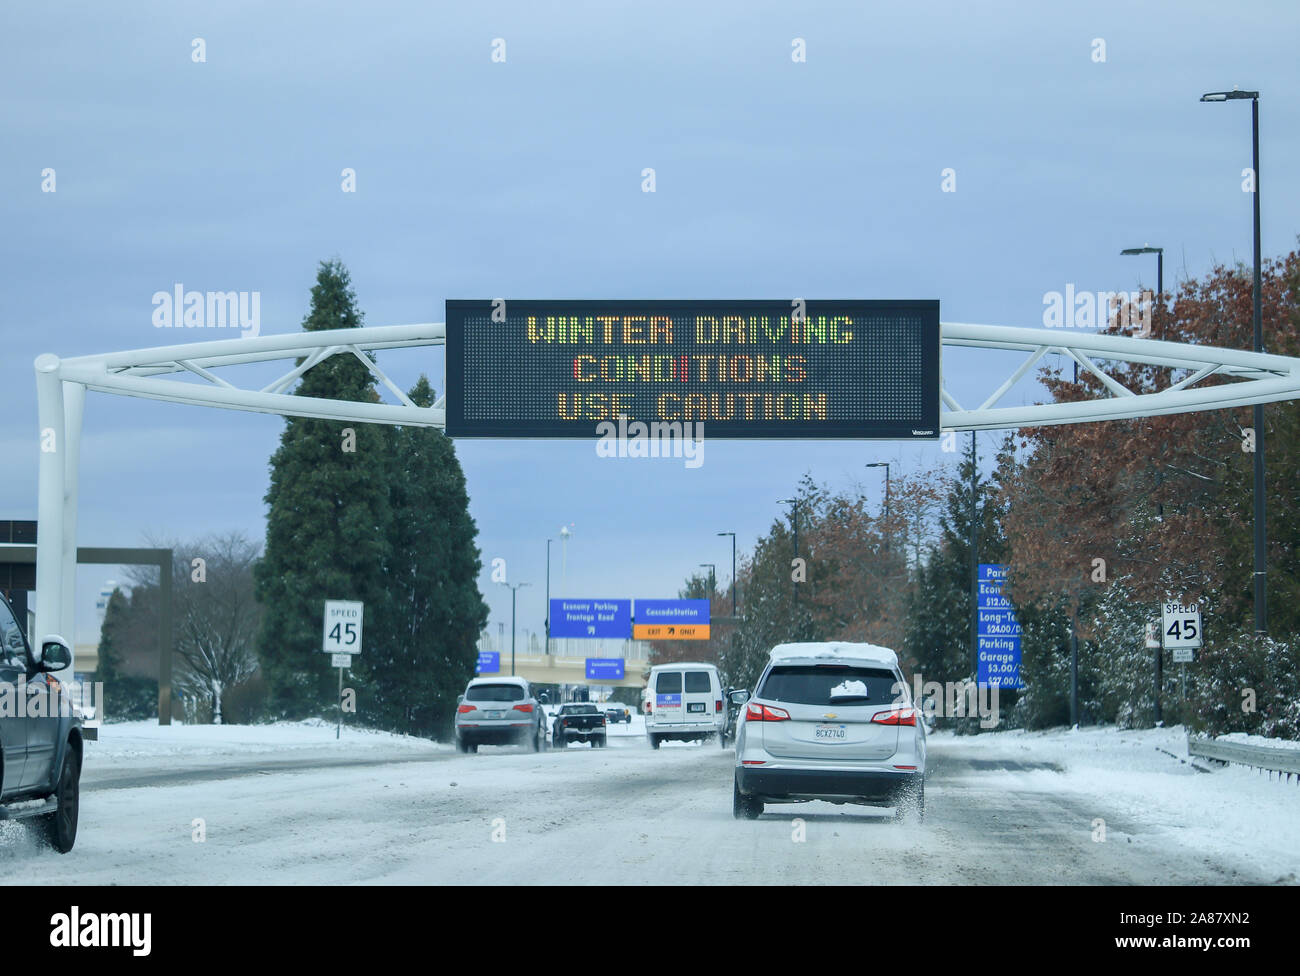 In inverno le condizioni di guida, utilizzare il simbolo di attenzione indica che è pericoloso per la guida in presenza di neve e di strade ghiacciate. Portland, Oregon, Stati Uniti d'America / Febbraio 2019. Foto Stock